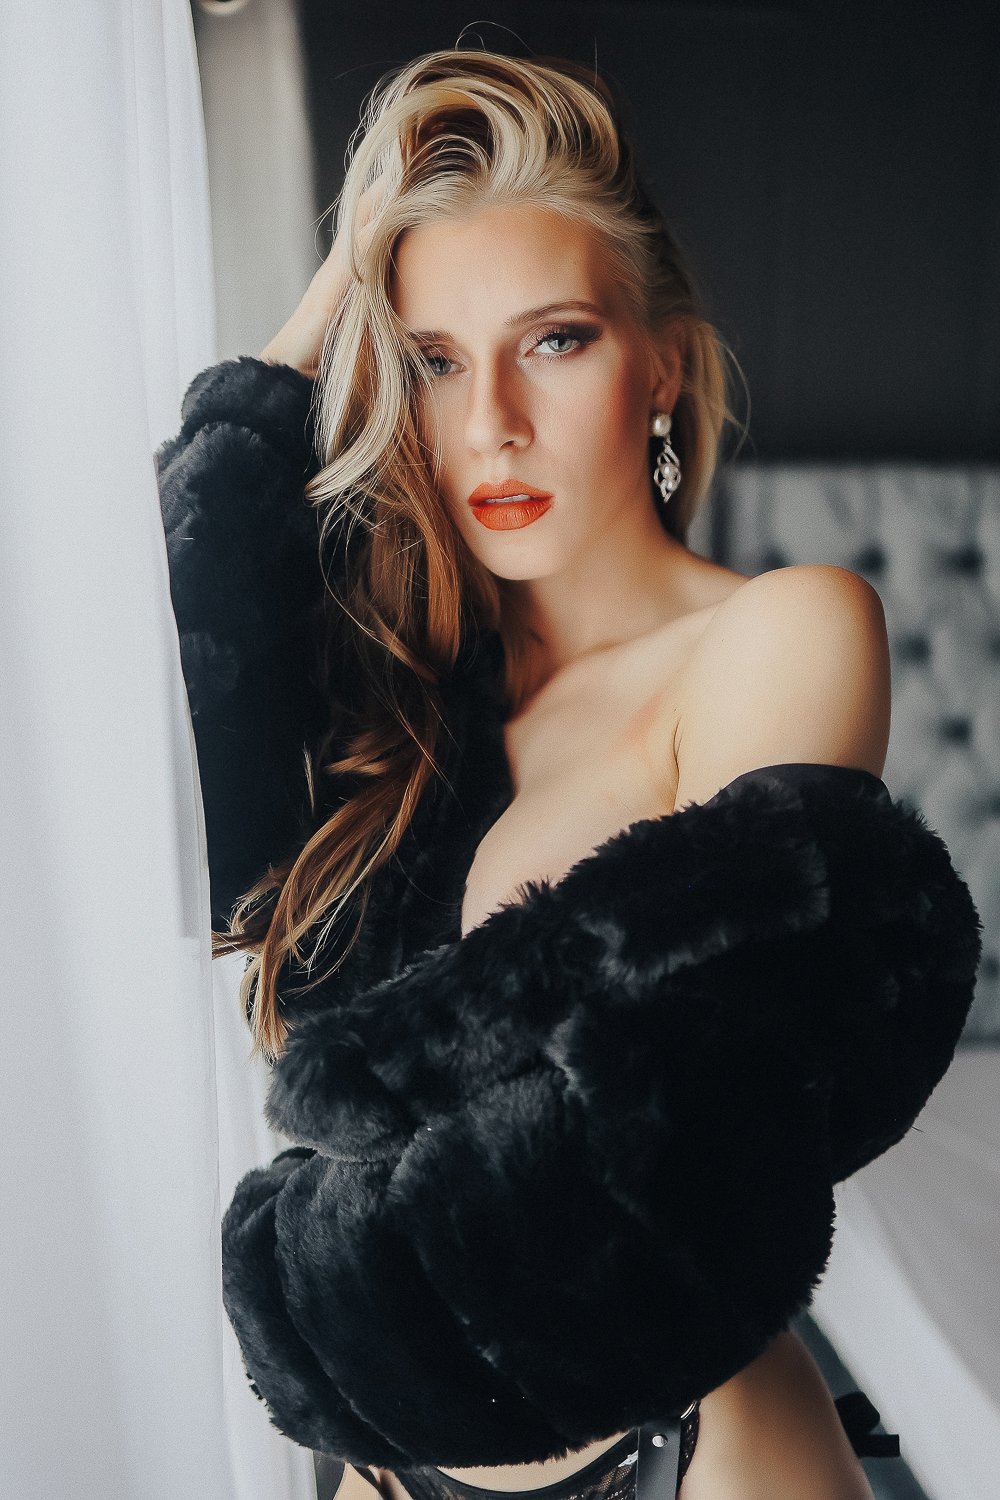 boudoir photos using a fur coat